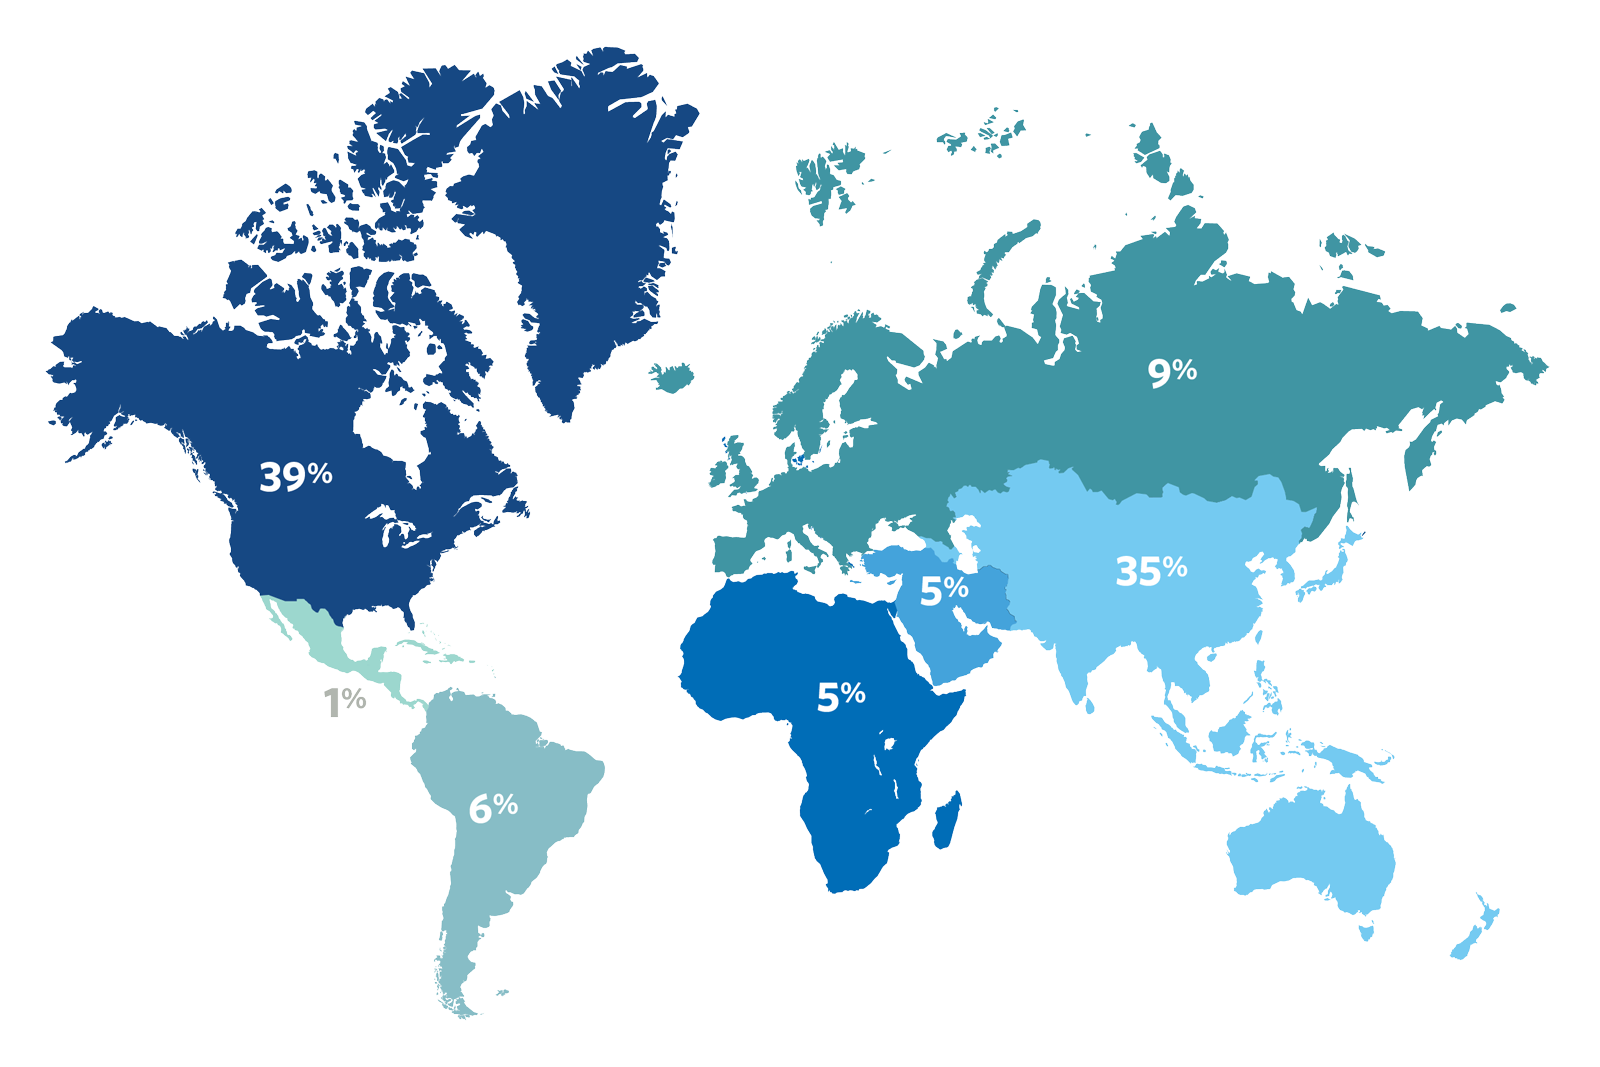 Advanced Management Program participants by region